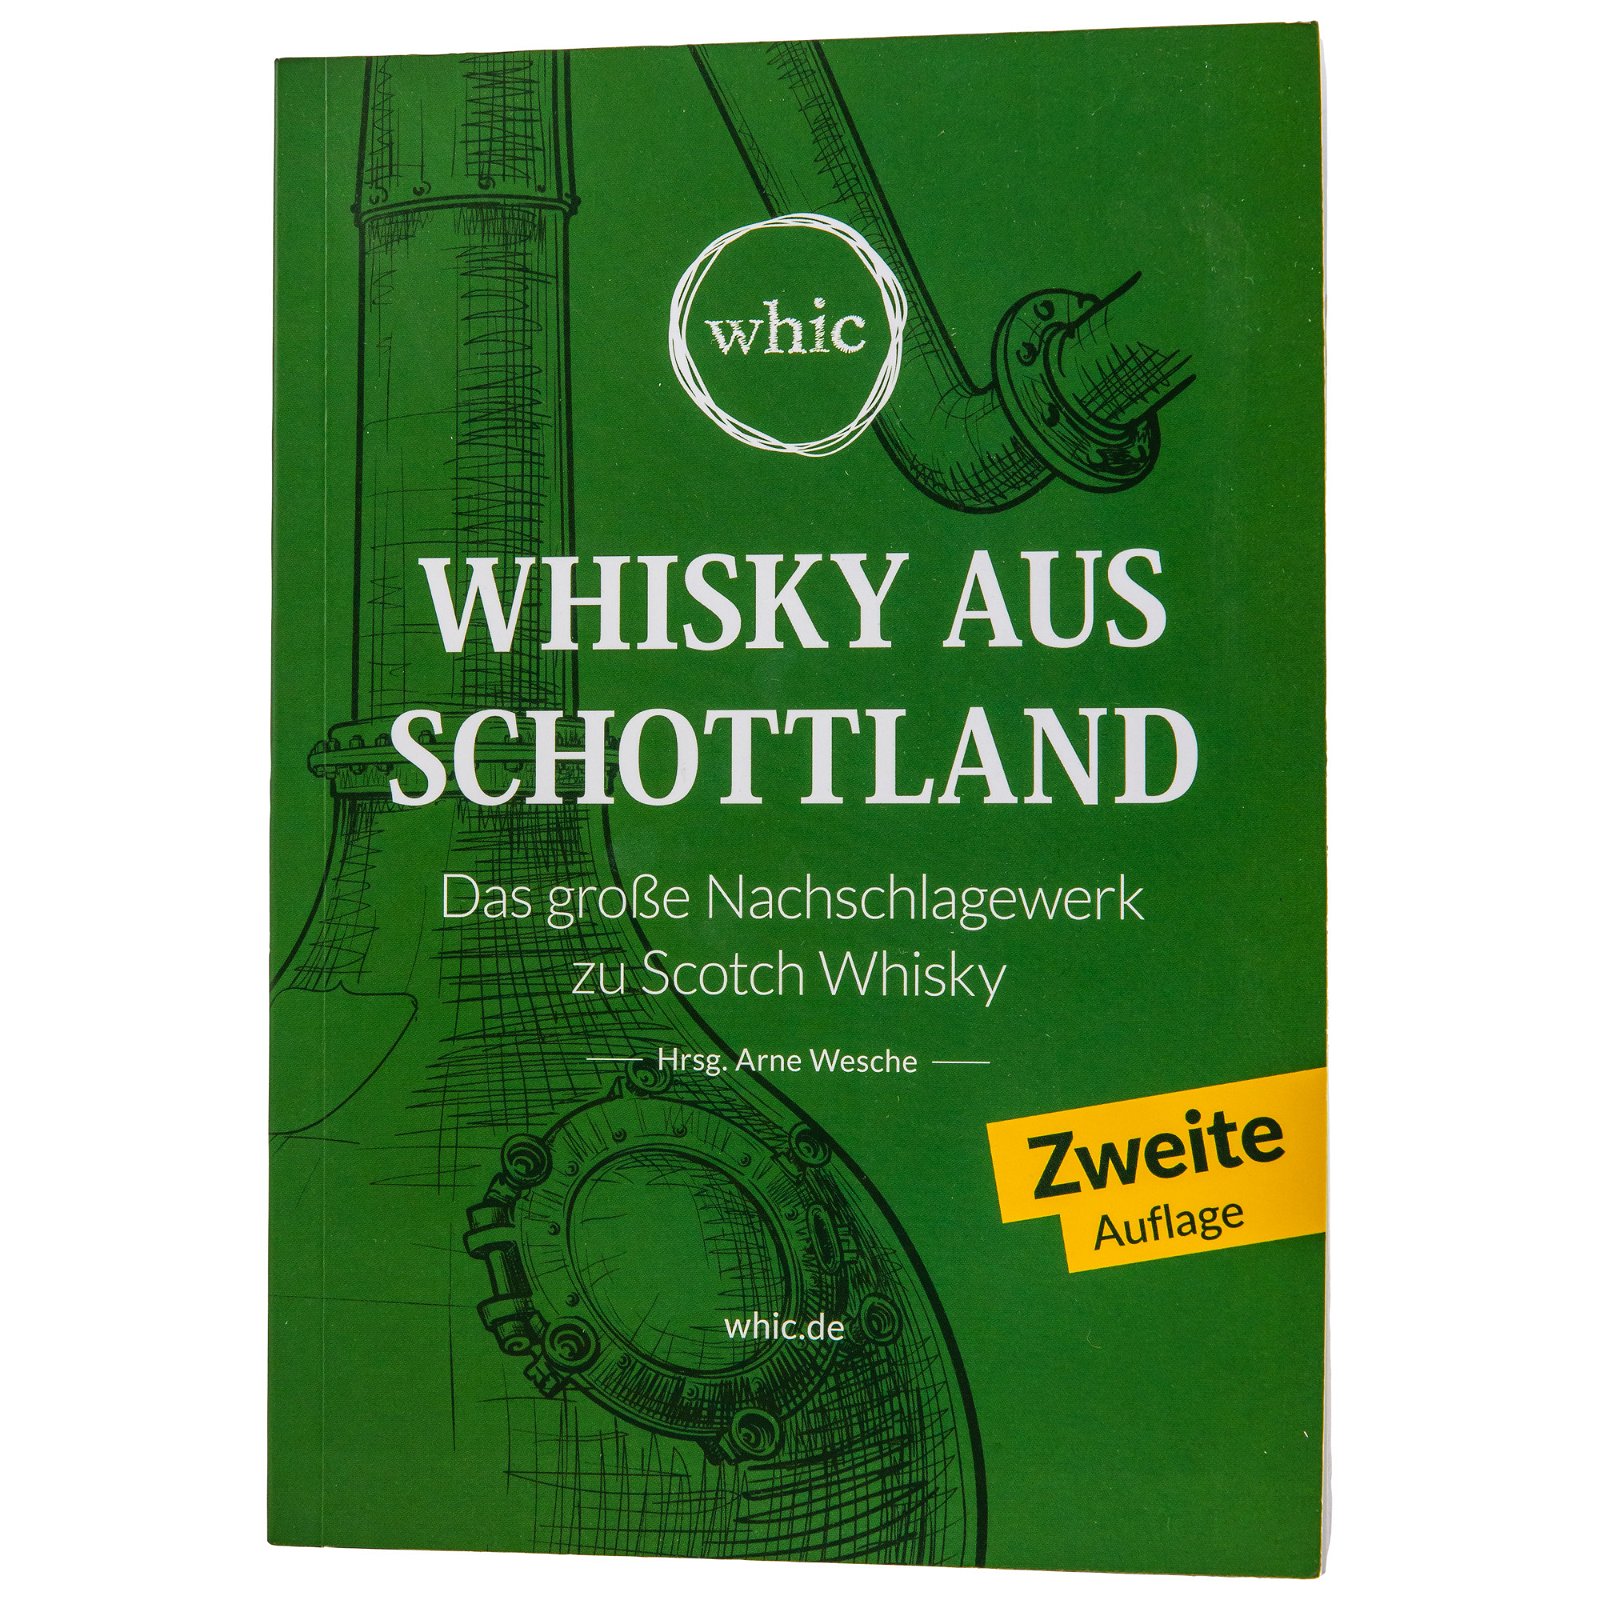 Whisky aus Schottland - Das große Scotch Whisky Buch (whic) - Geschenk